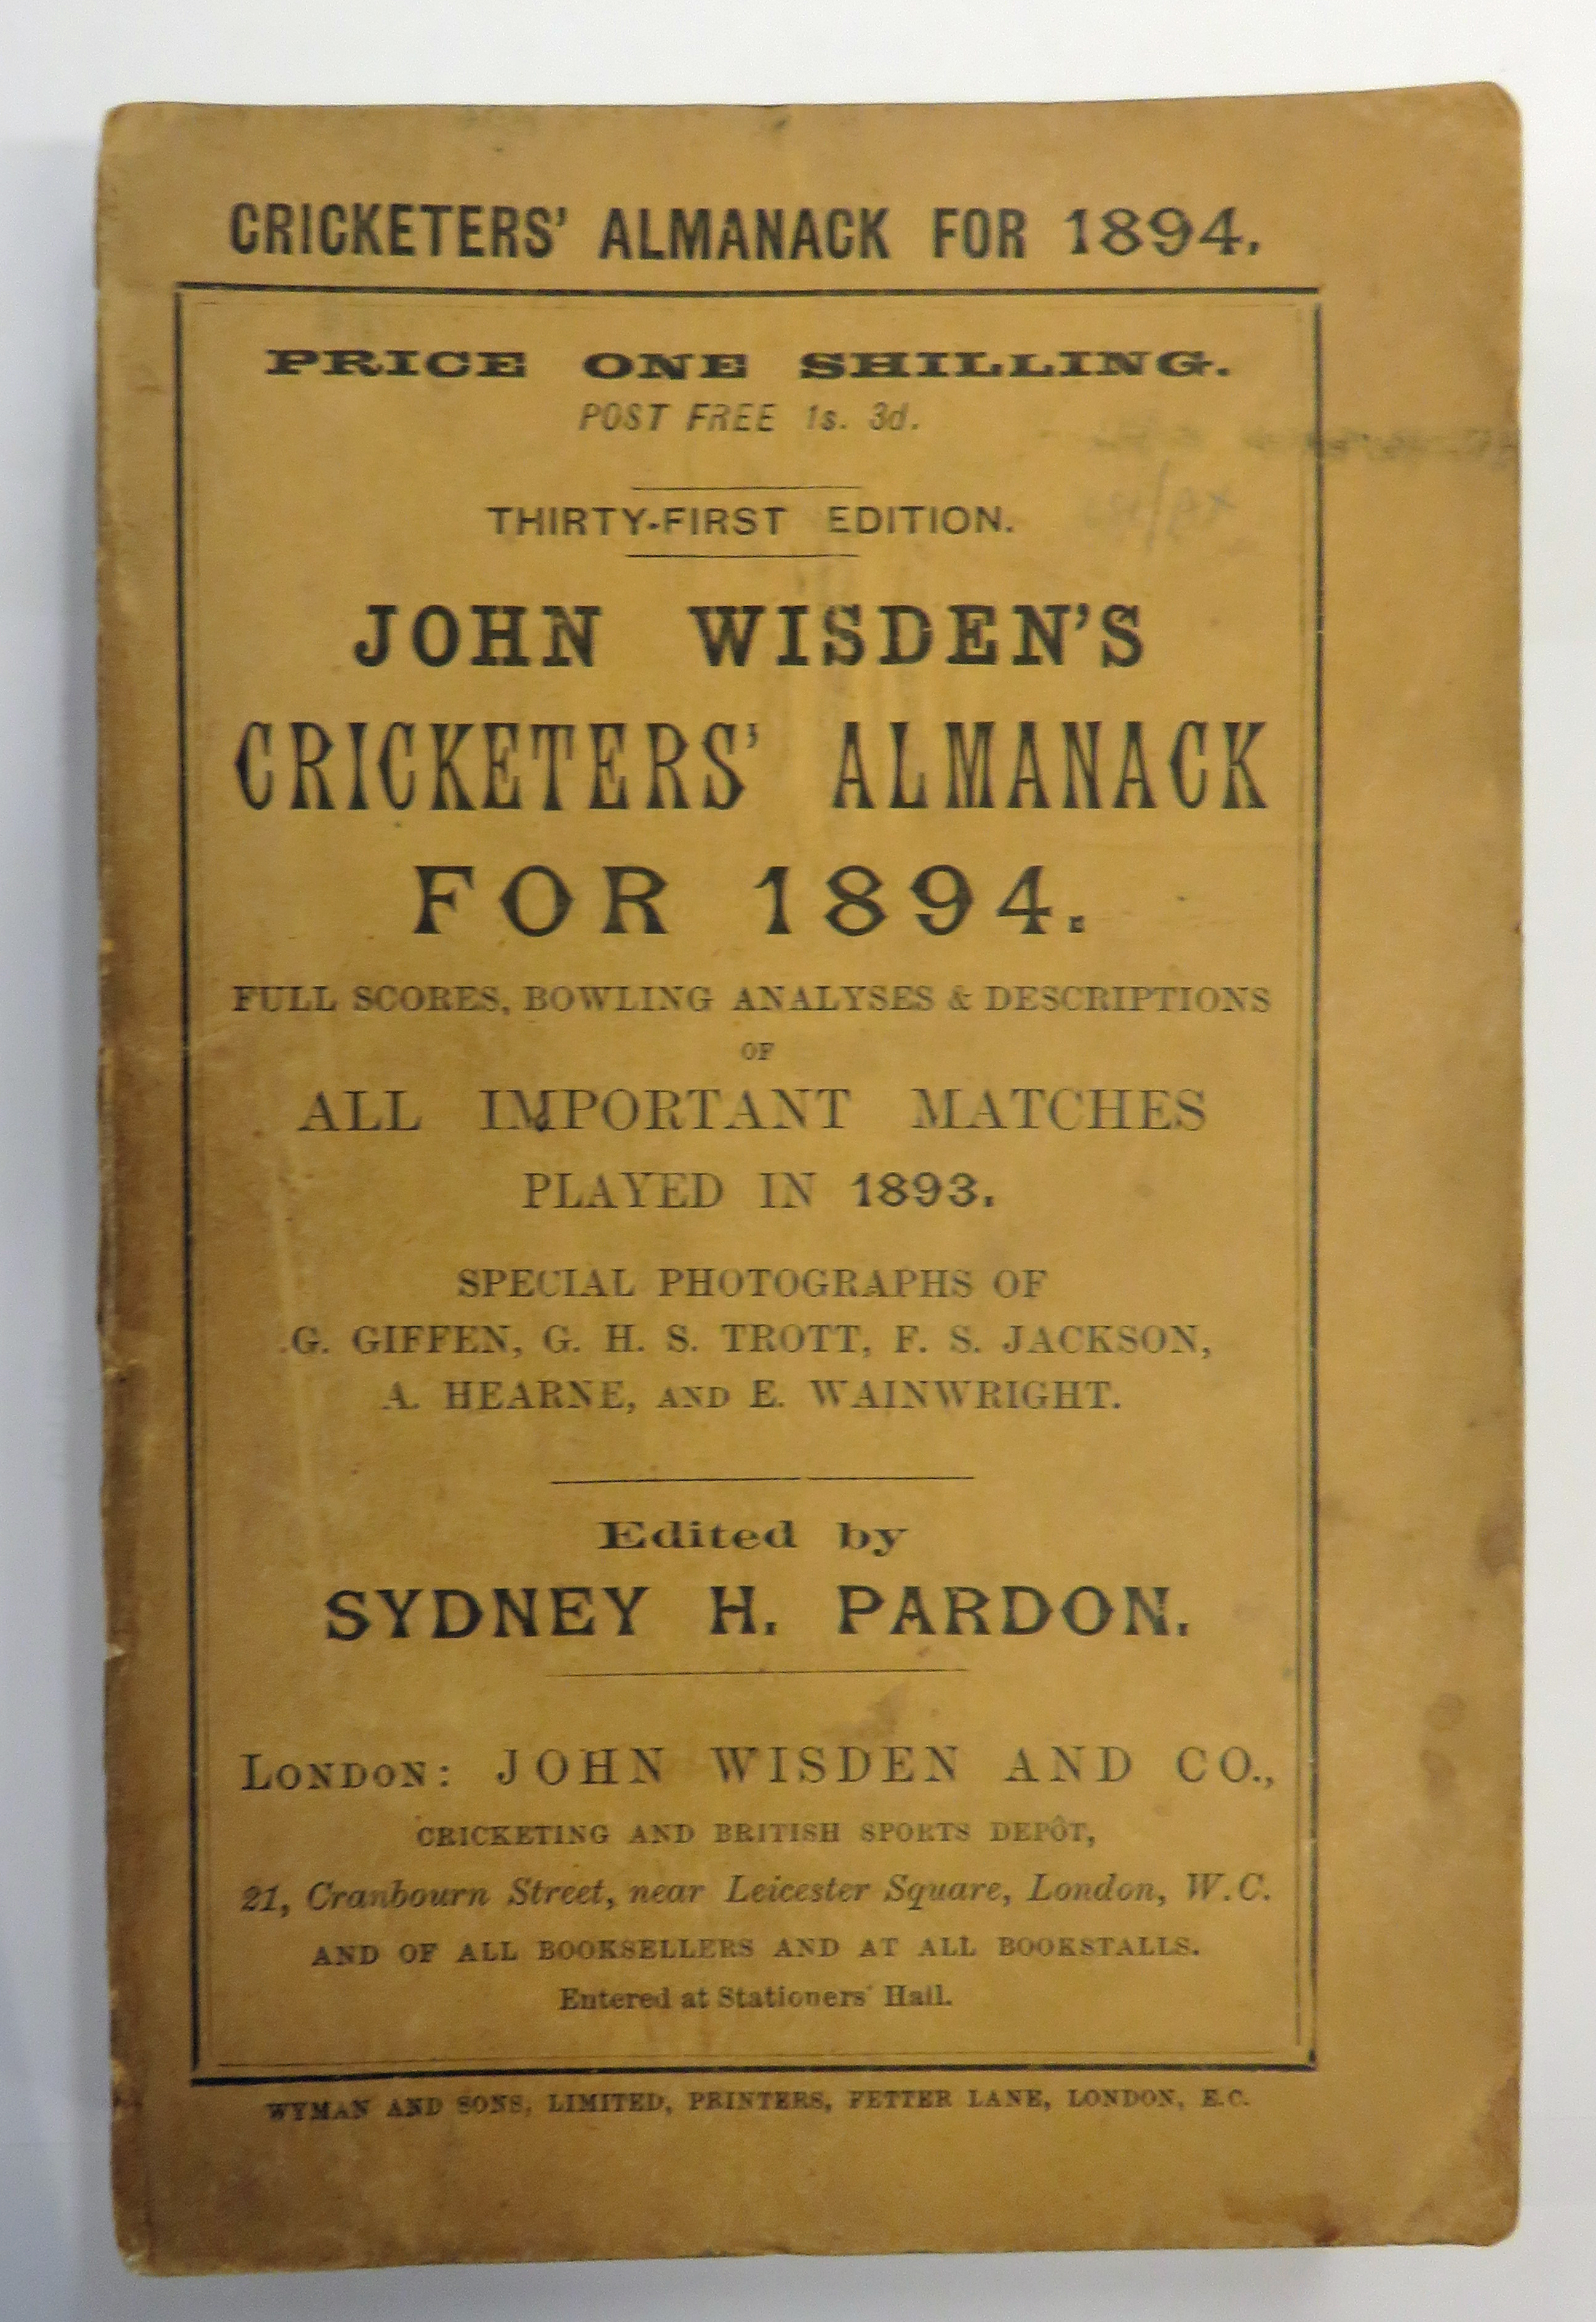 John Wisden Cricketers' Almanack for 1894